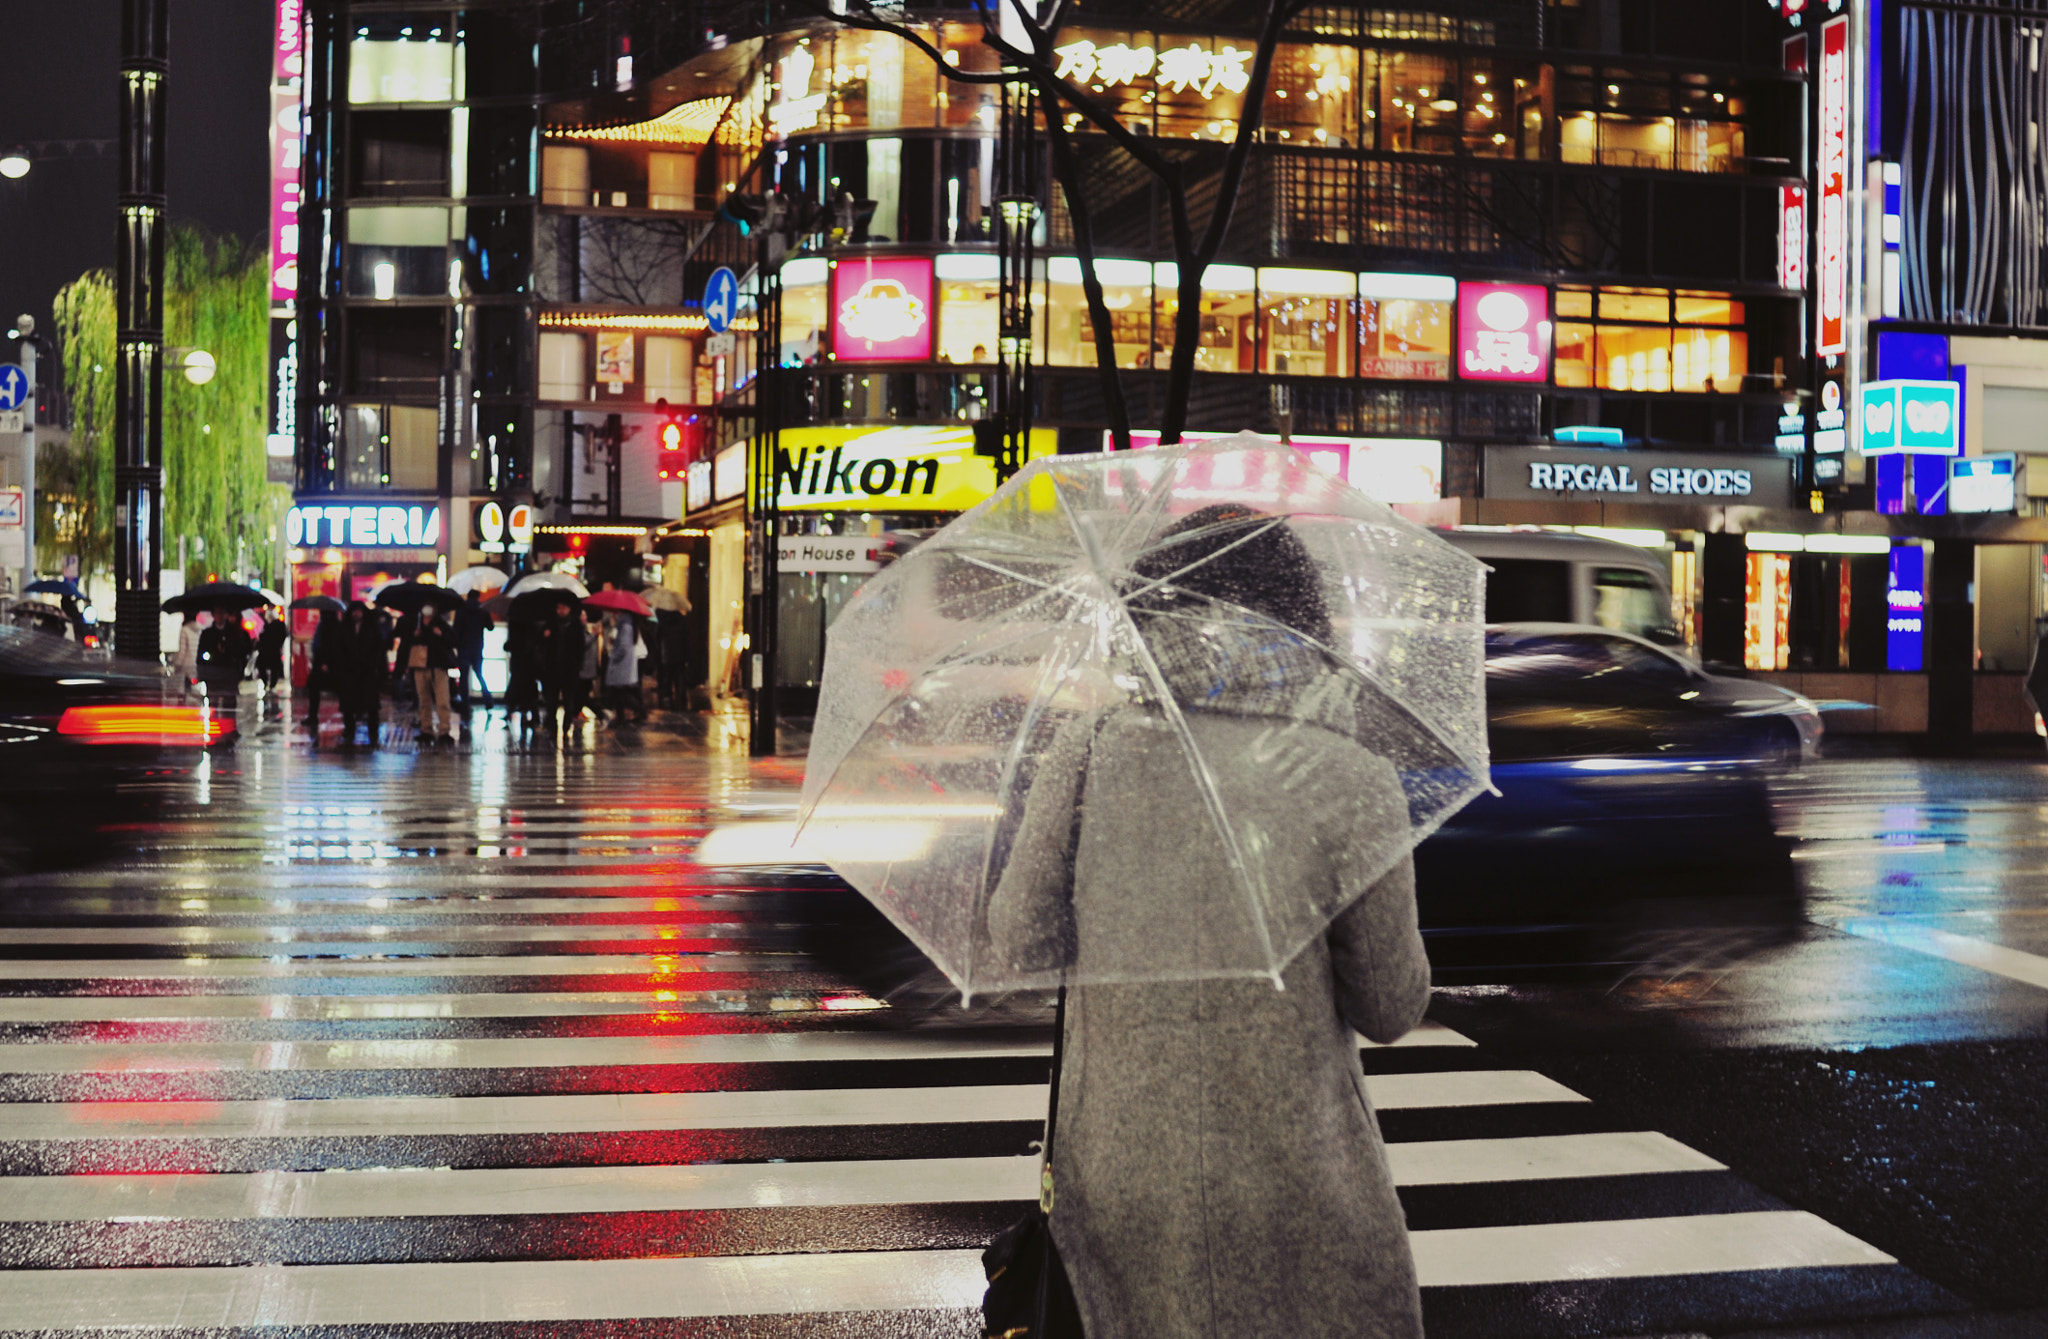 Nikon D90 + AF Nikkor 28mm f/2.8 sample photo. Lullaby for tokyo city photography